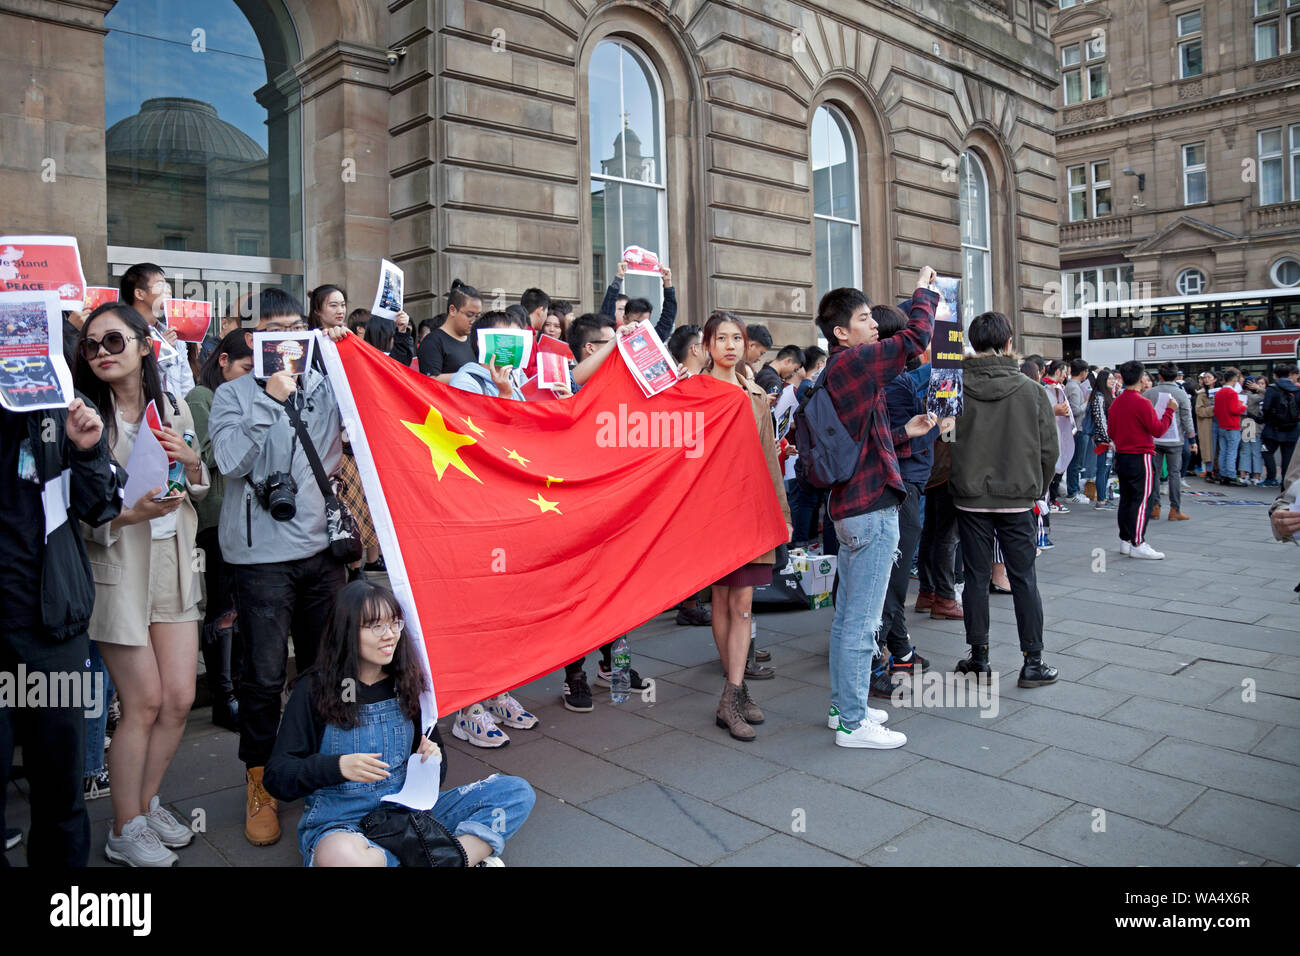 Edinburgh, Schottland, Großbritannien. 17. August 2019. Chinesisch in ruhiger Lage im Stadtzentrum mit Plakaten zu fragen 'was geschah am 8.11. in Hongkong" demonstrieren. "Polizeibeamte sind ernsthaft von der Benzin Bombe aus dem randalierer abgefeuert wurden verletzt." Stockfoto